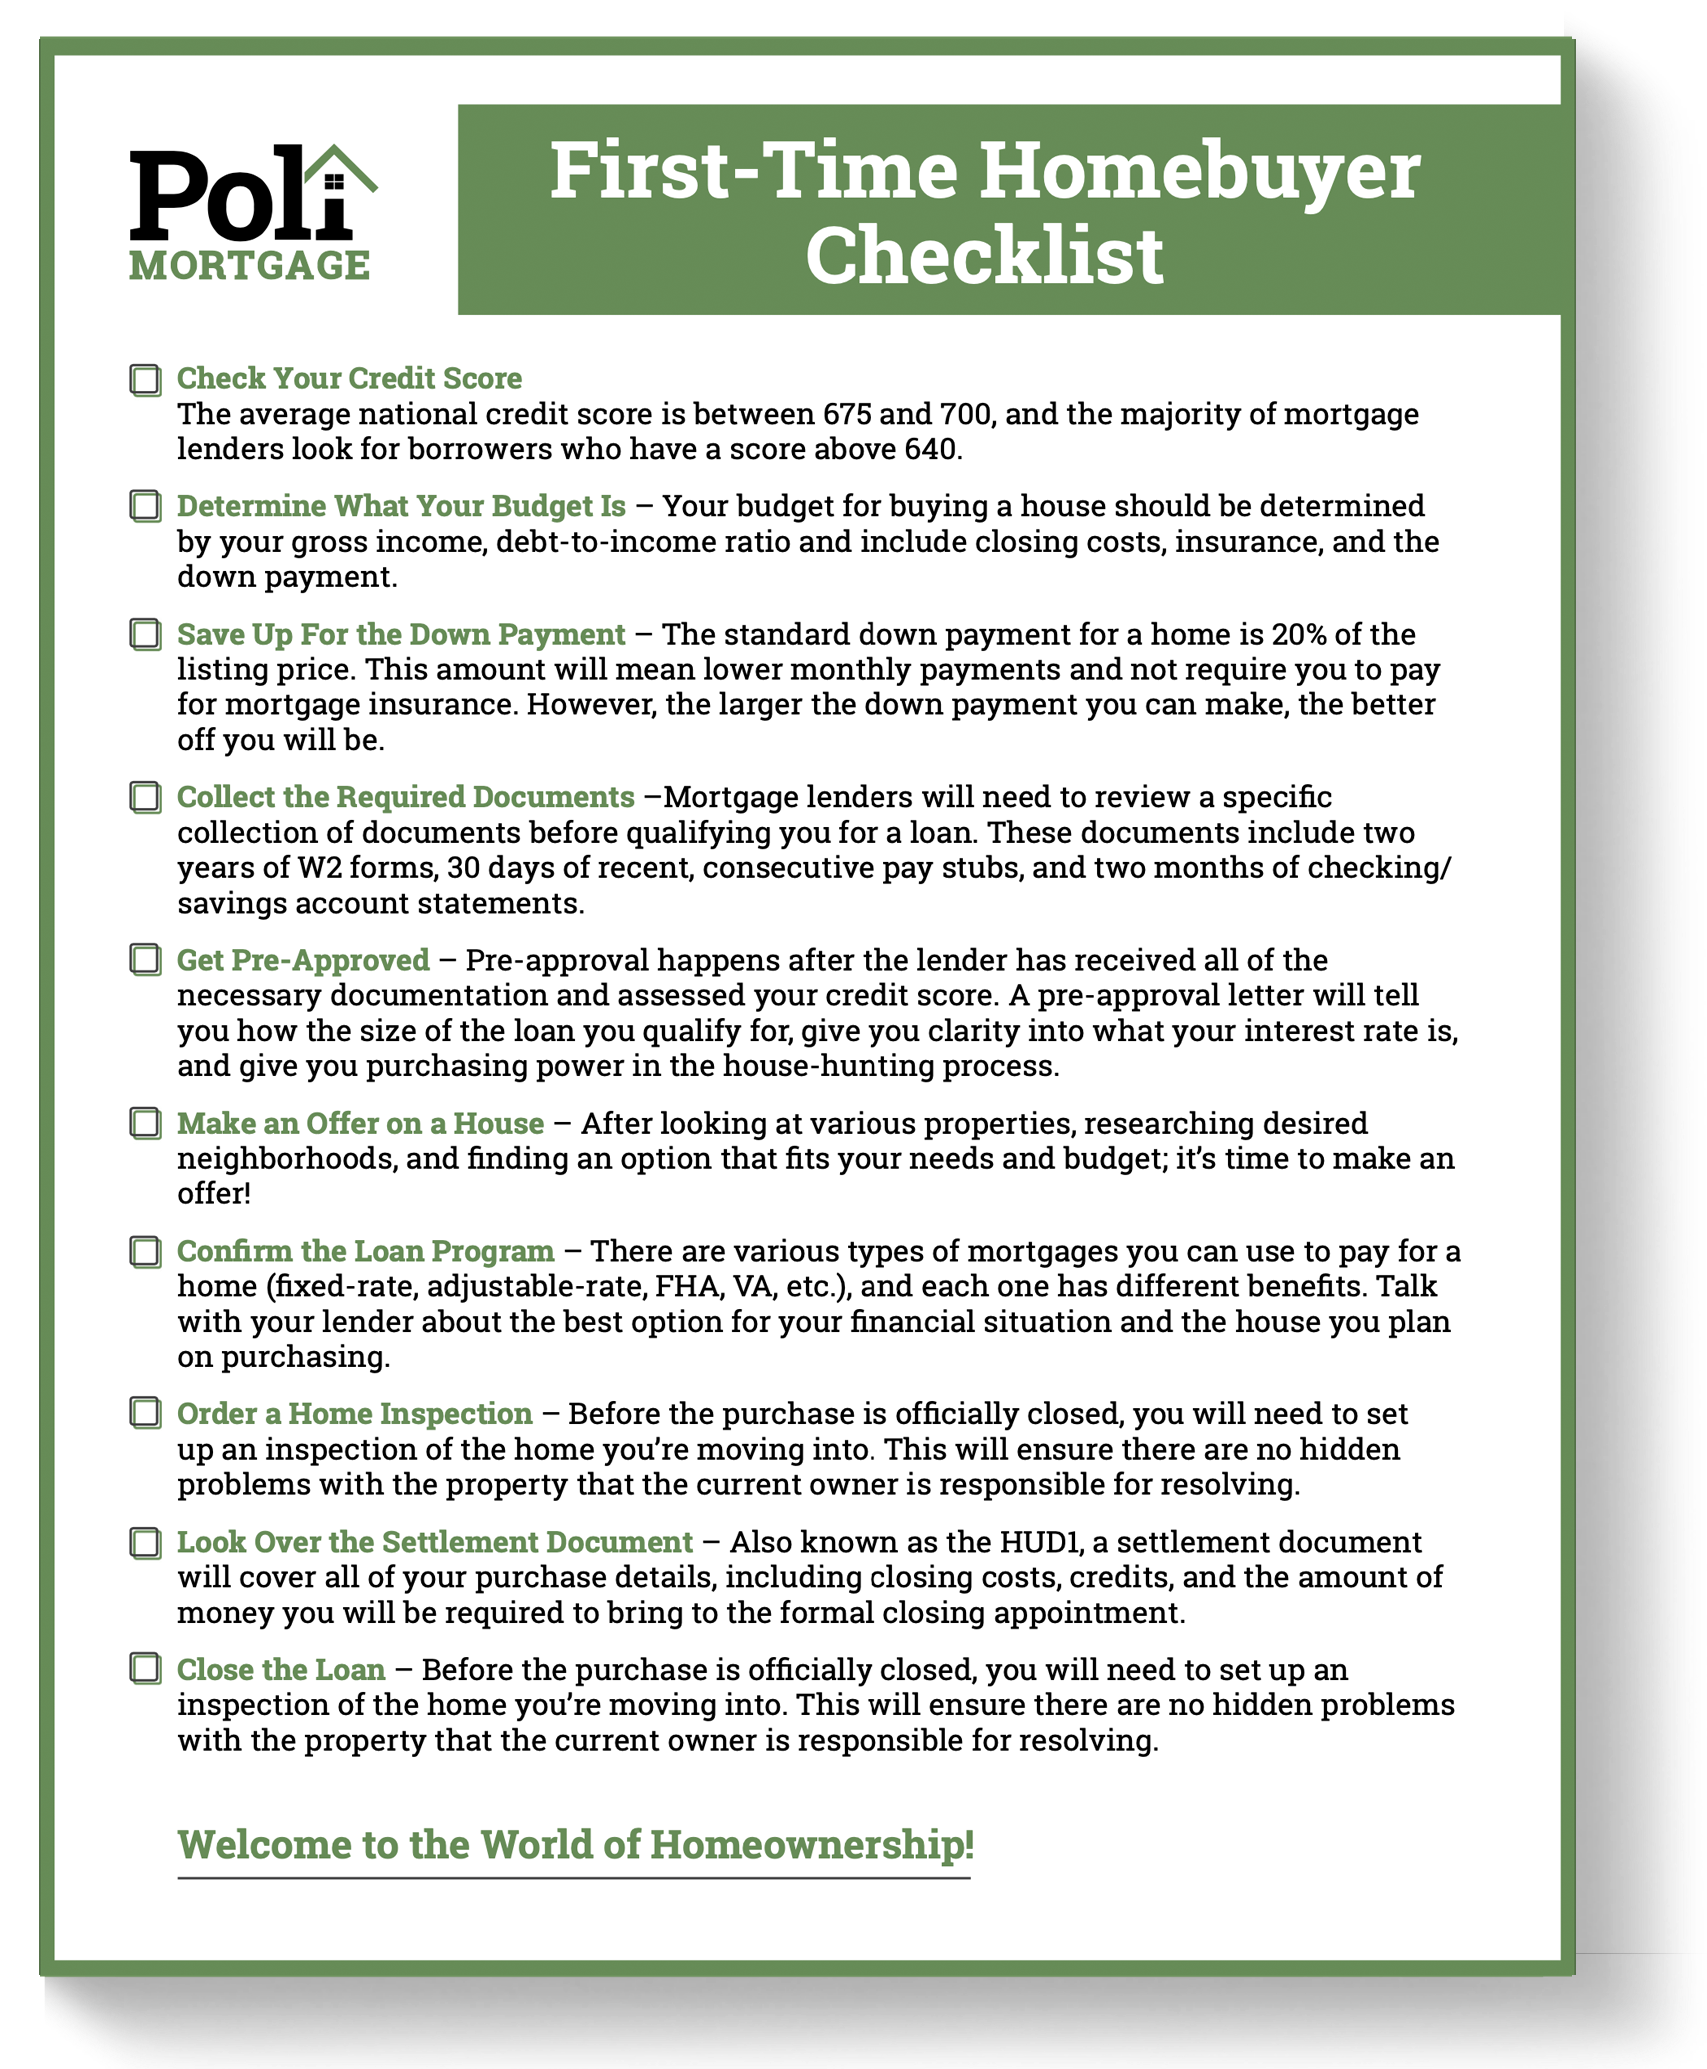 First-Time-Homebuyer-Checklist